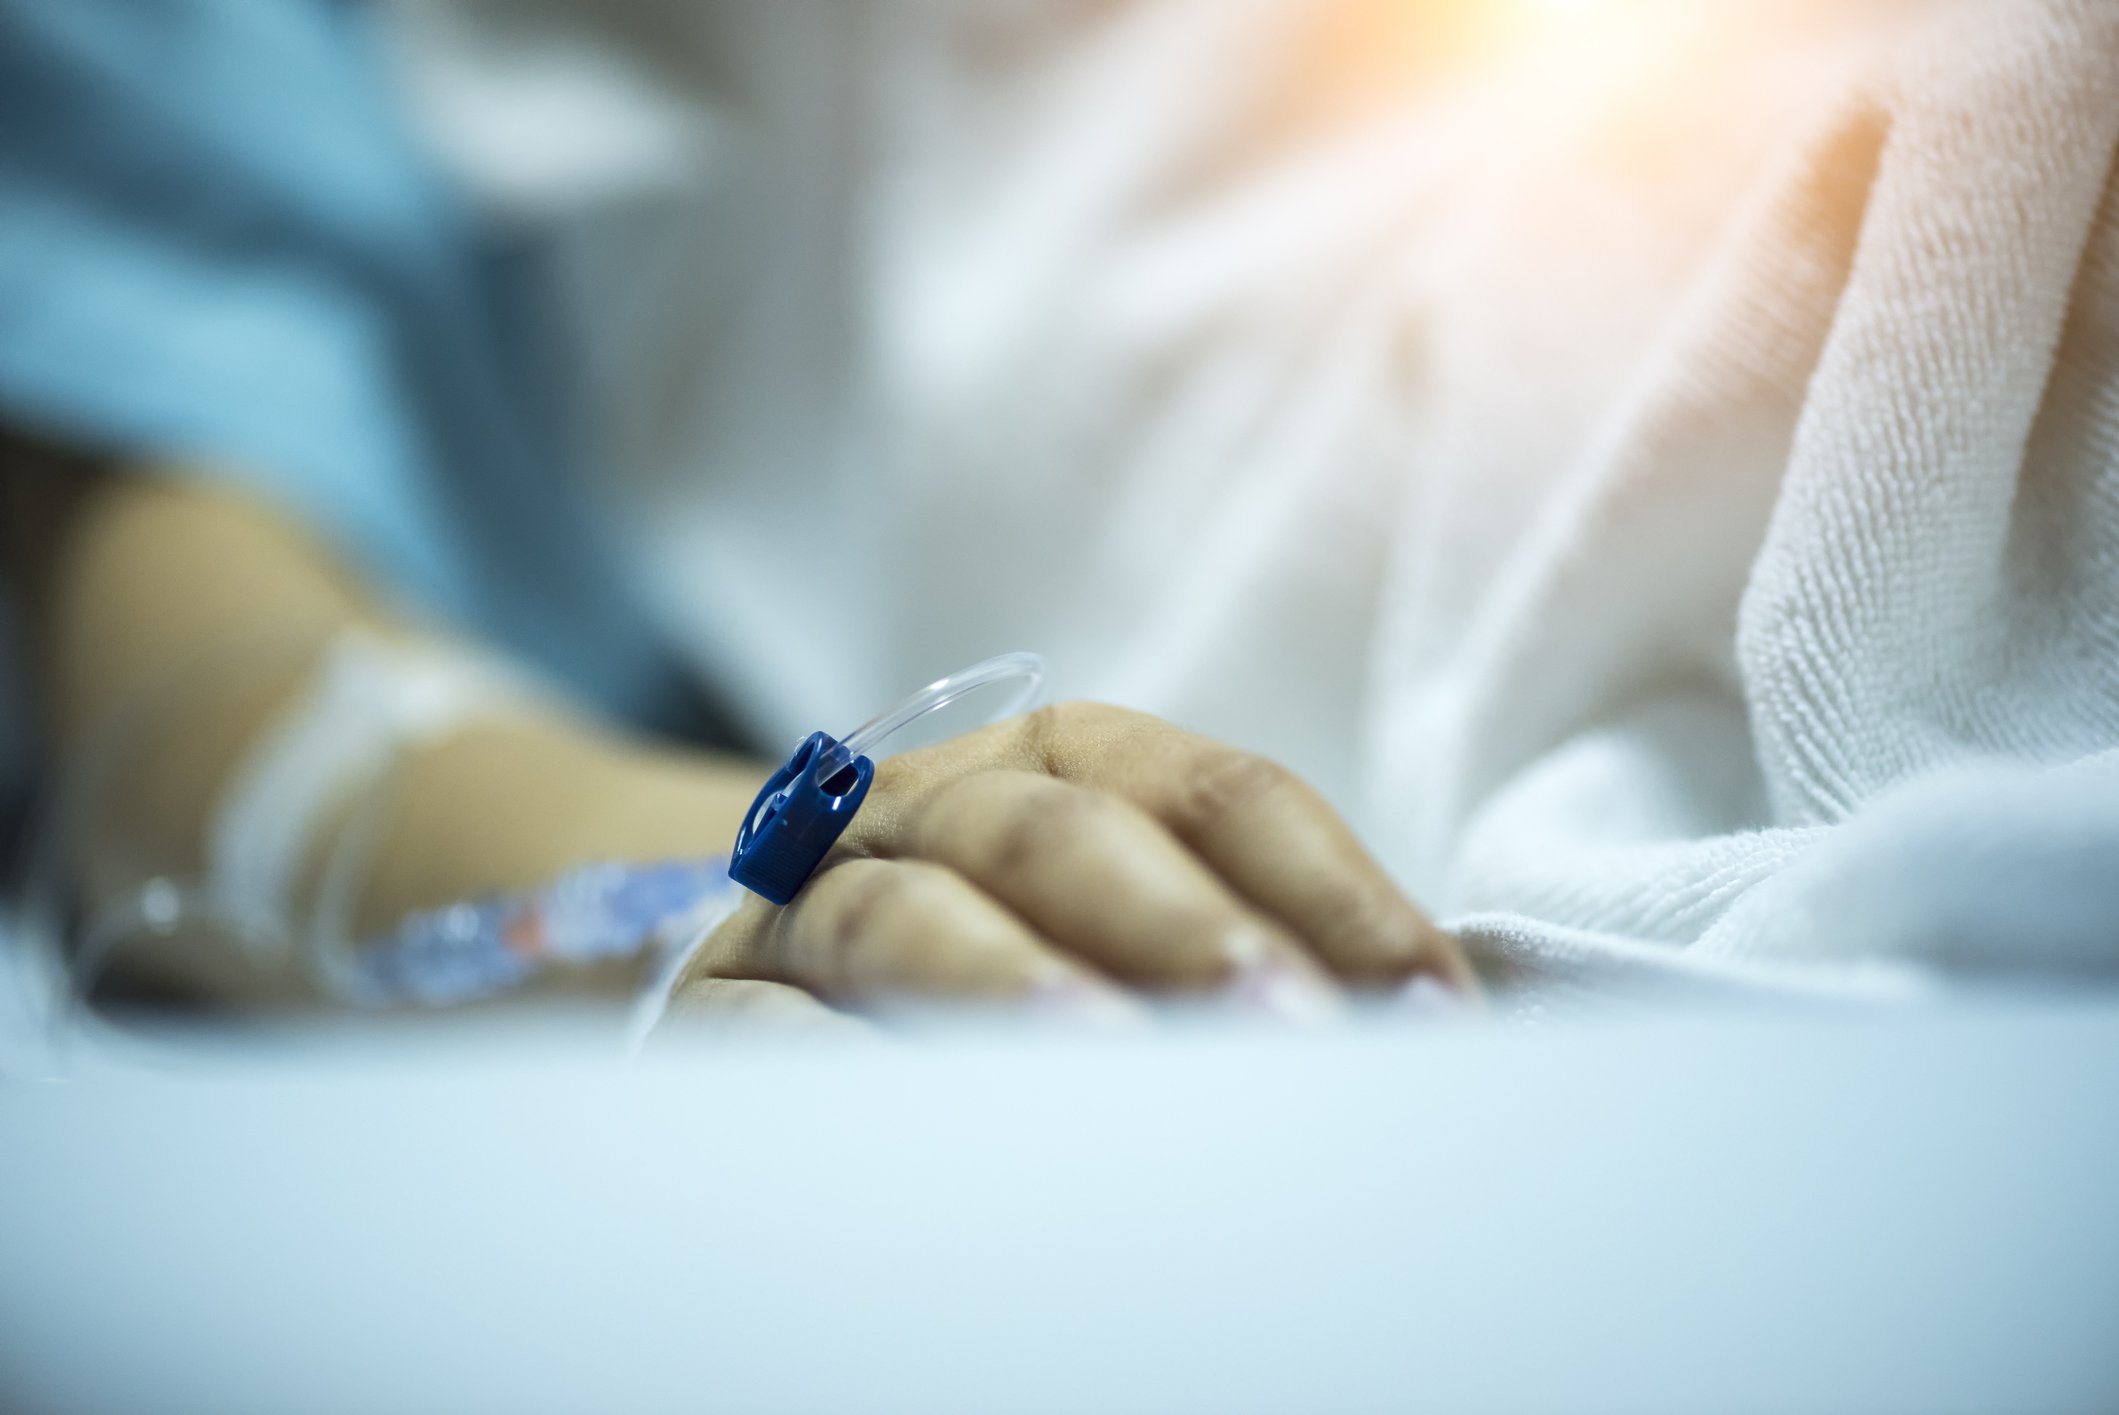 Foto der Hand einer Person auf Krankenhausbett | Quelle: Getty Images